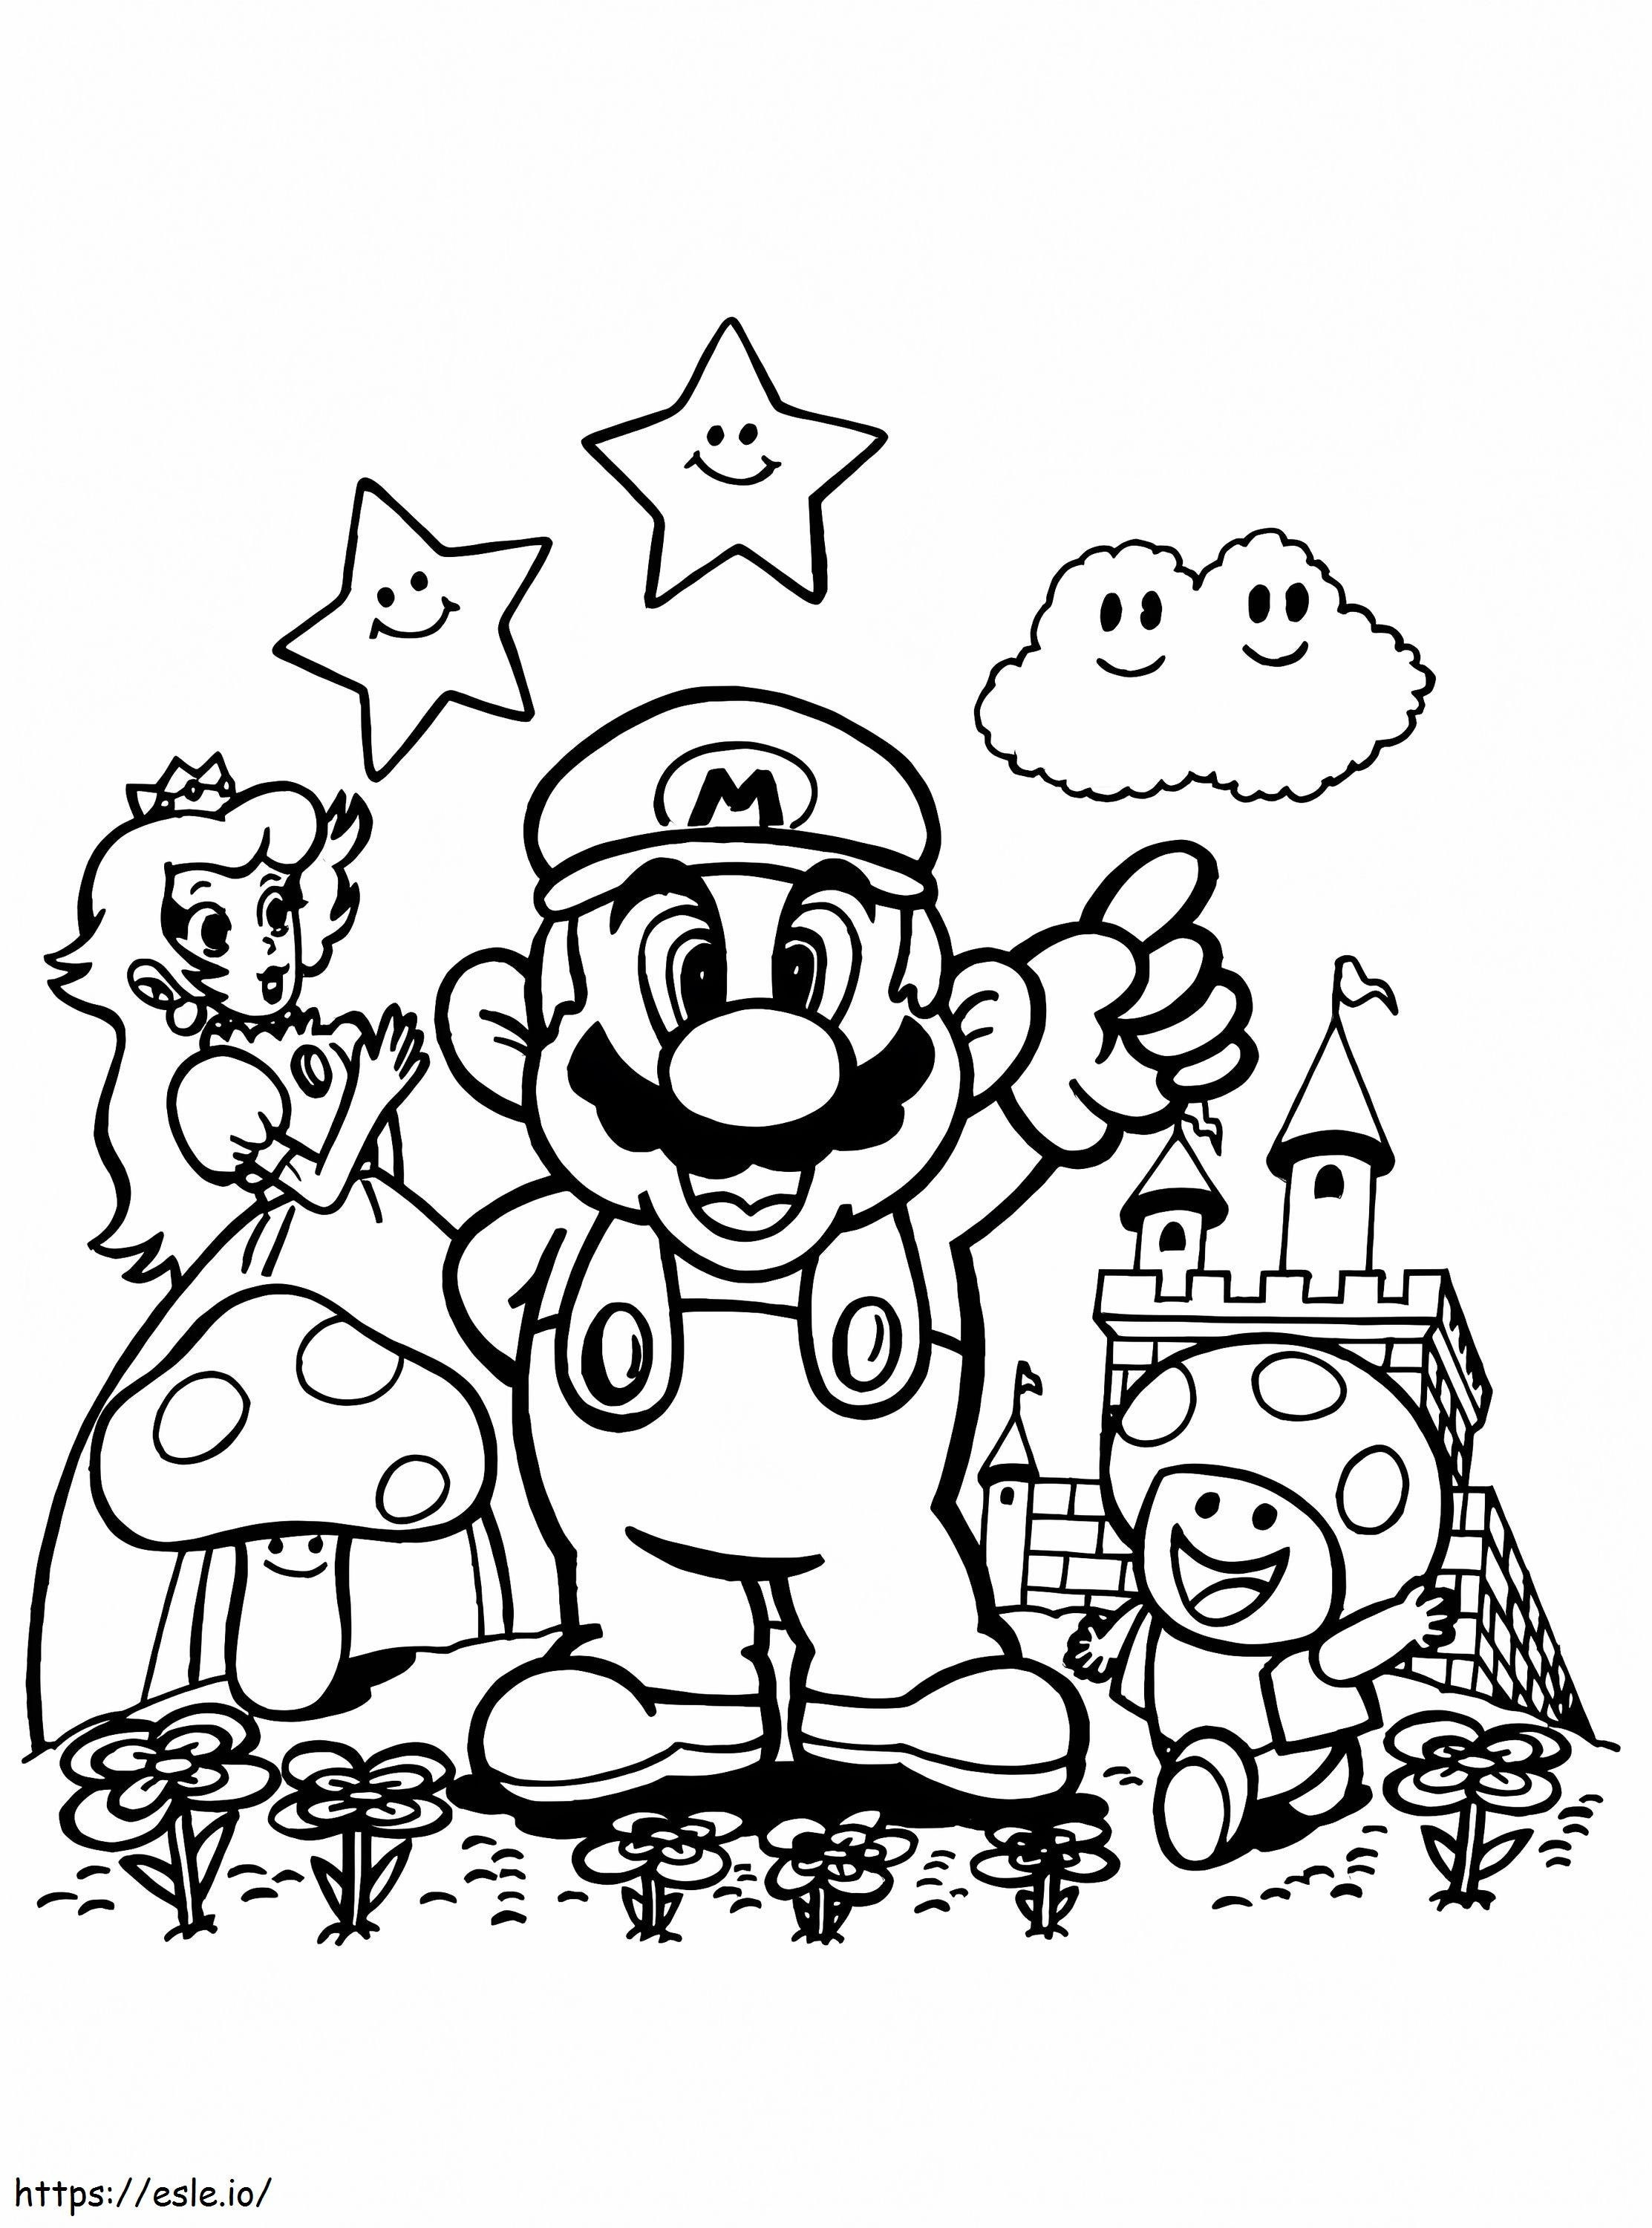 Mario e l'amico da colorare